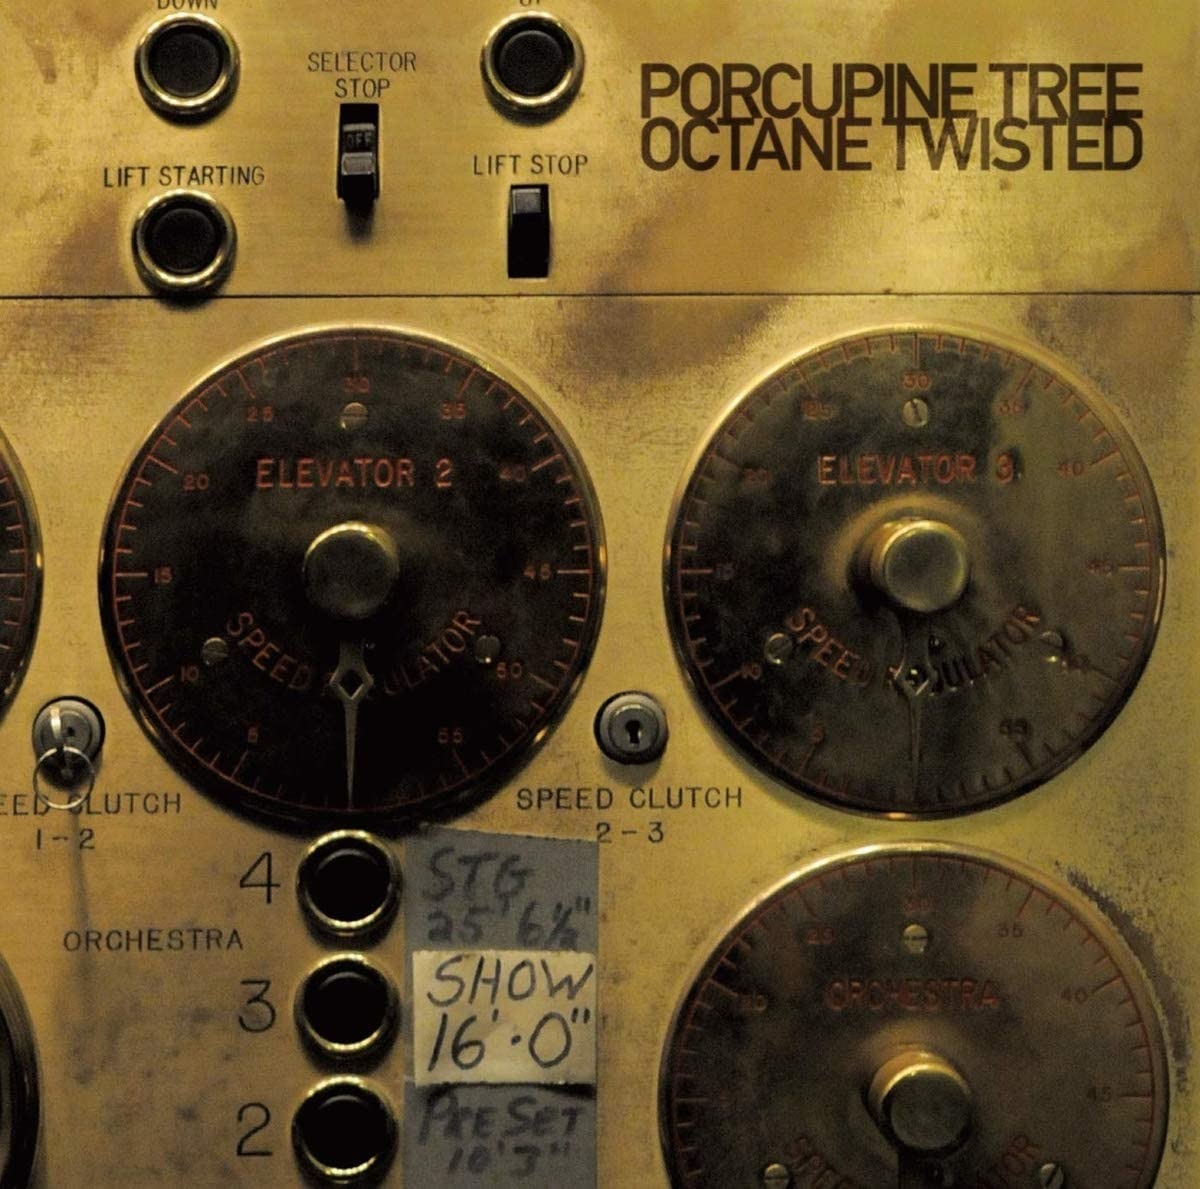 Vinile Porcupine Tree - Octane Twisted (4 Lp) NUOVO SIGILLATO, EDIZIONE DEL 02/04/2021 SUBITO DISPONIBILE